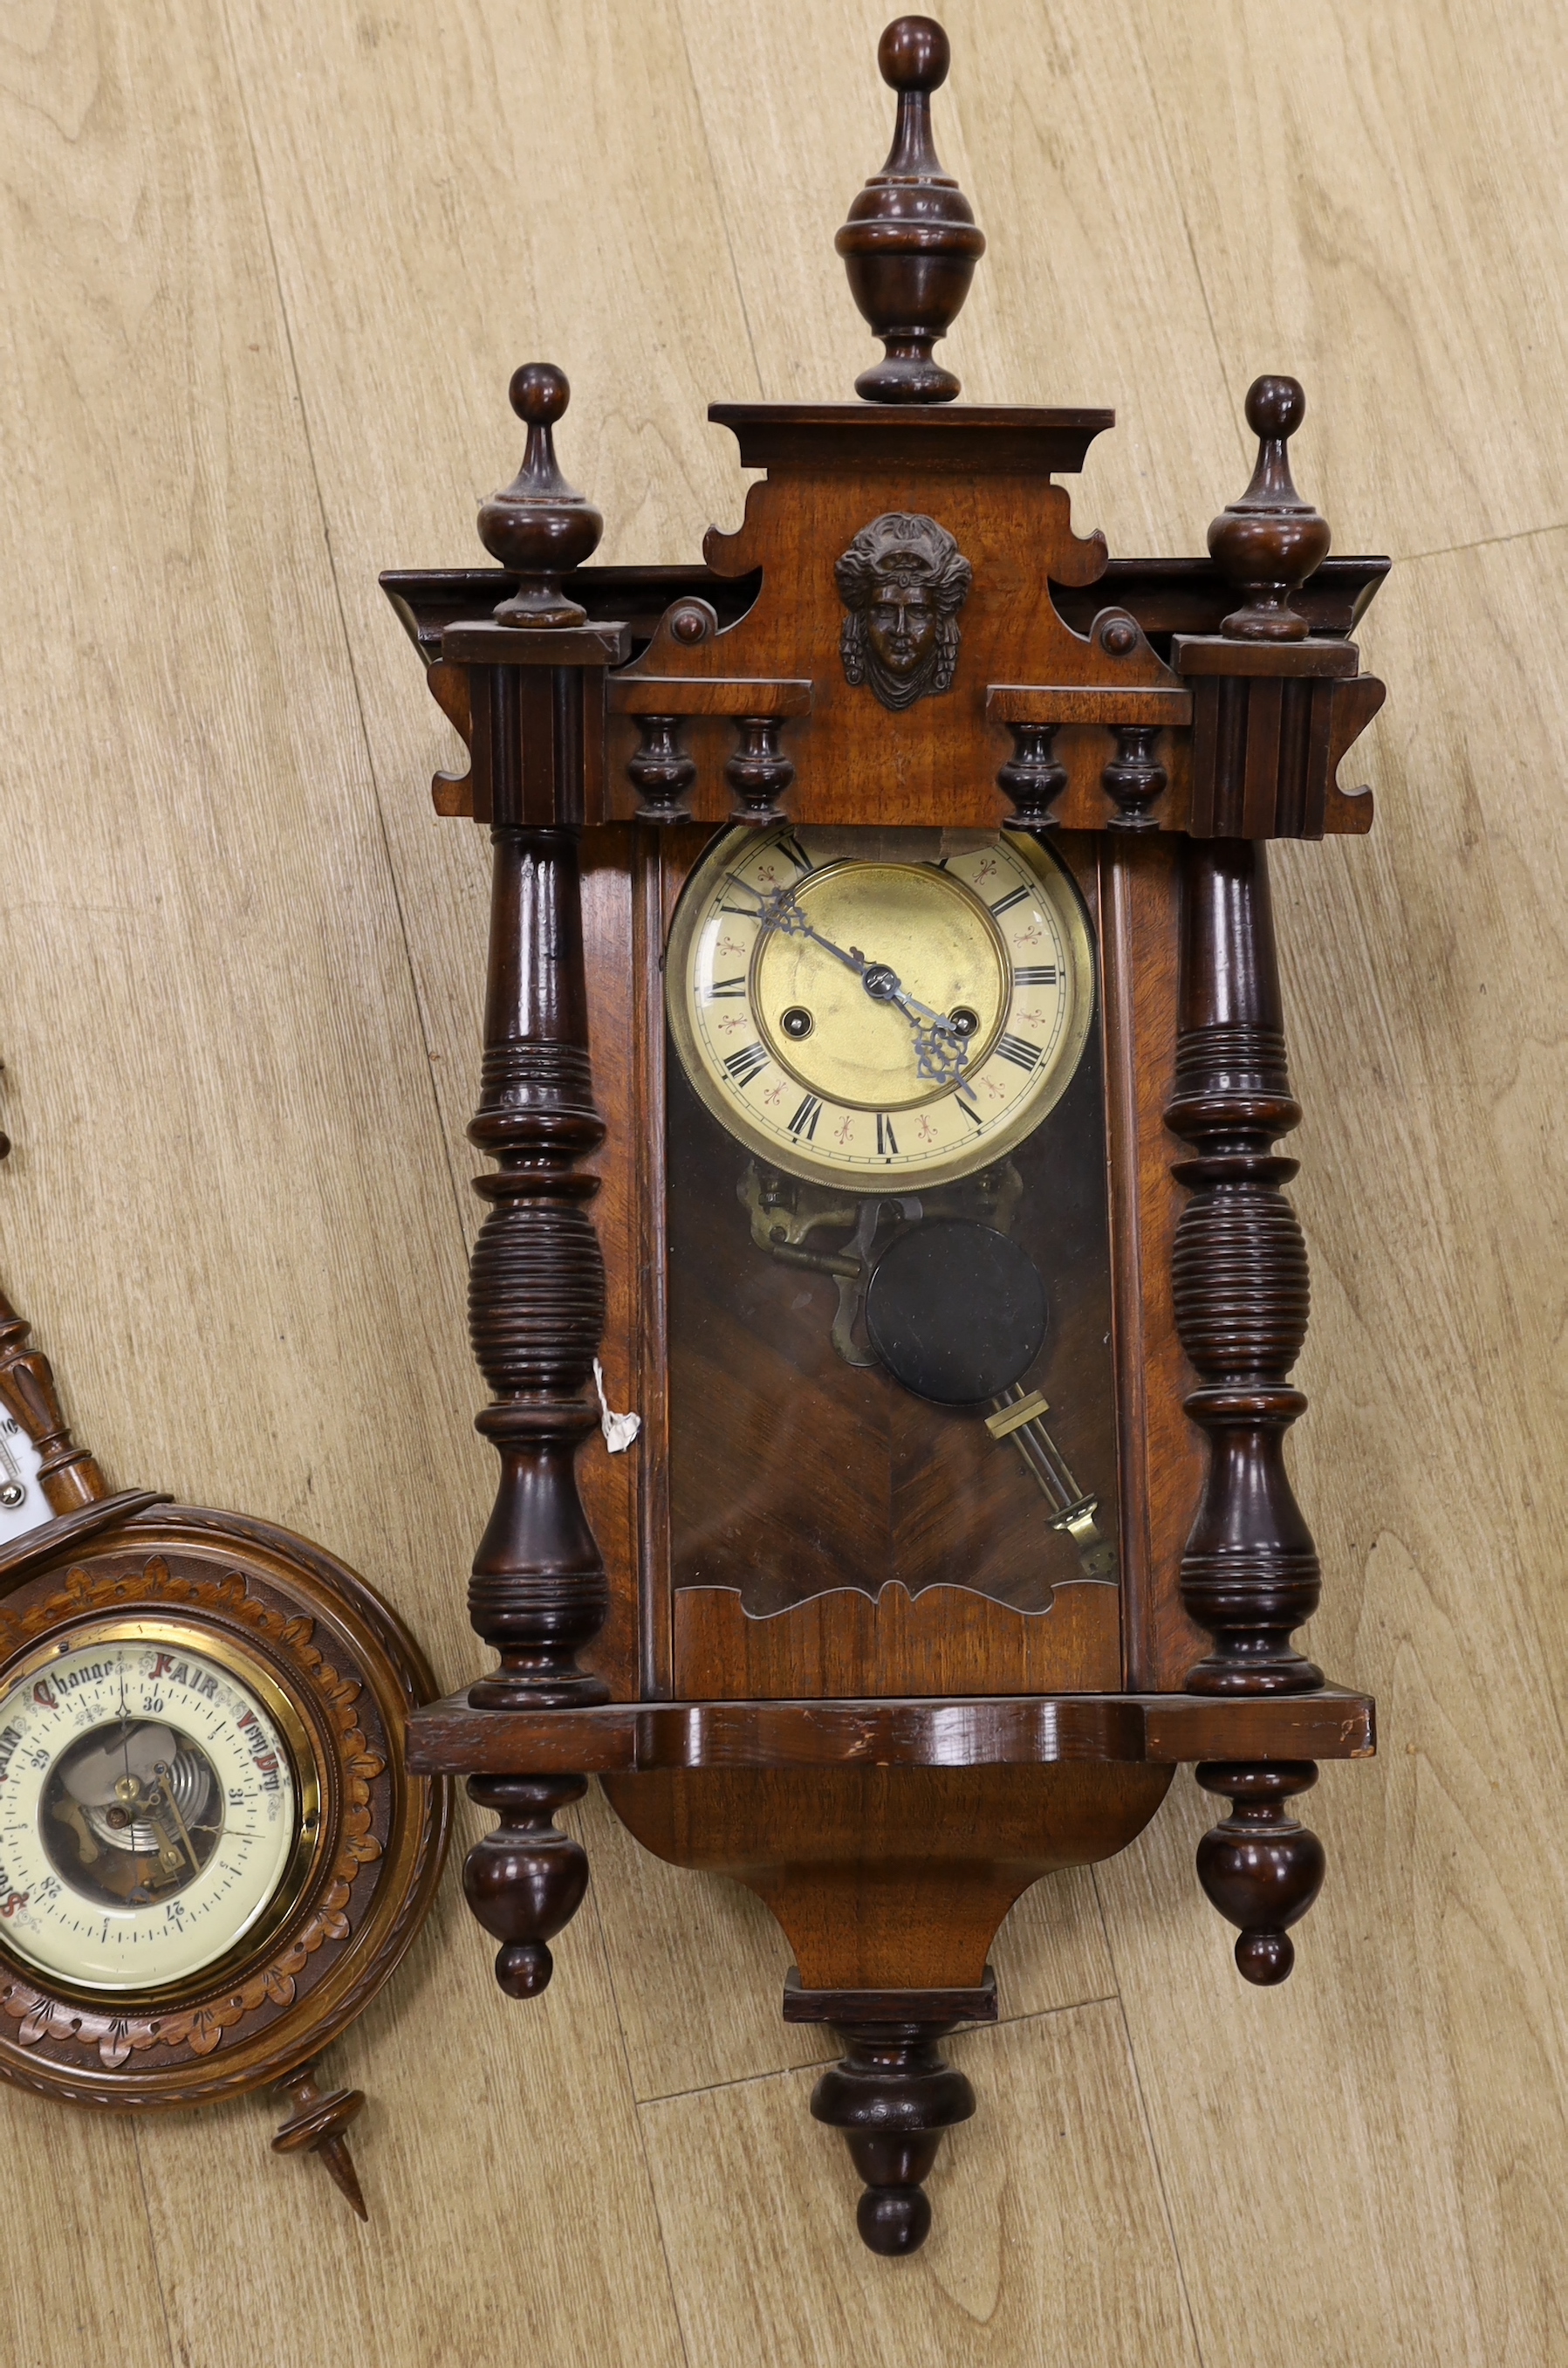 A mahogany Vienna wall clock and an aneroid barometer